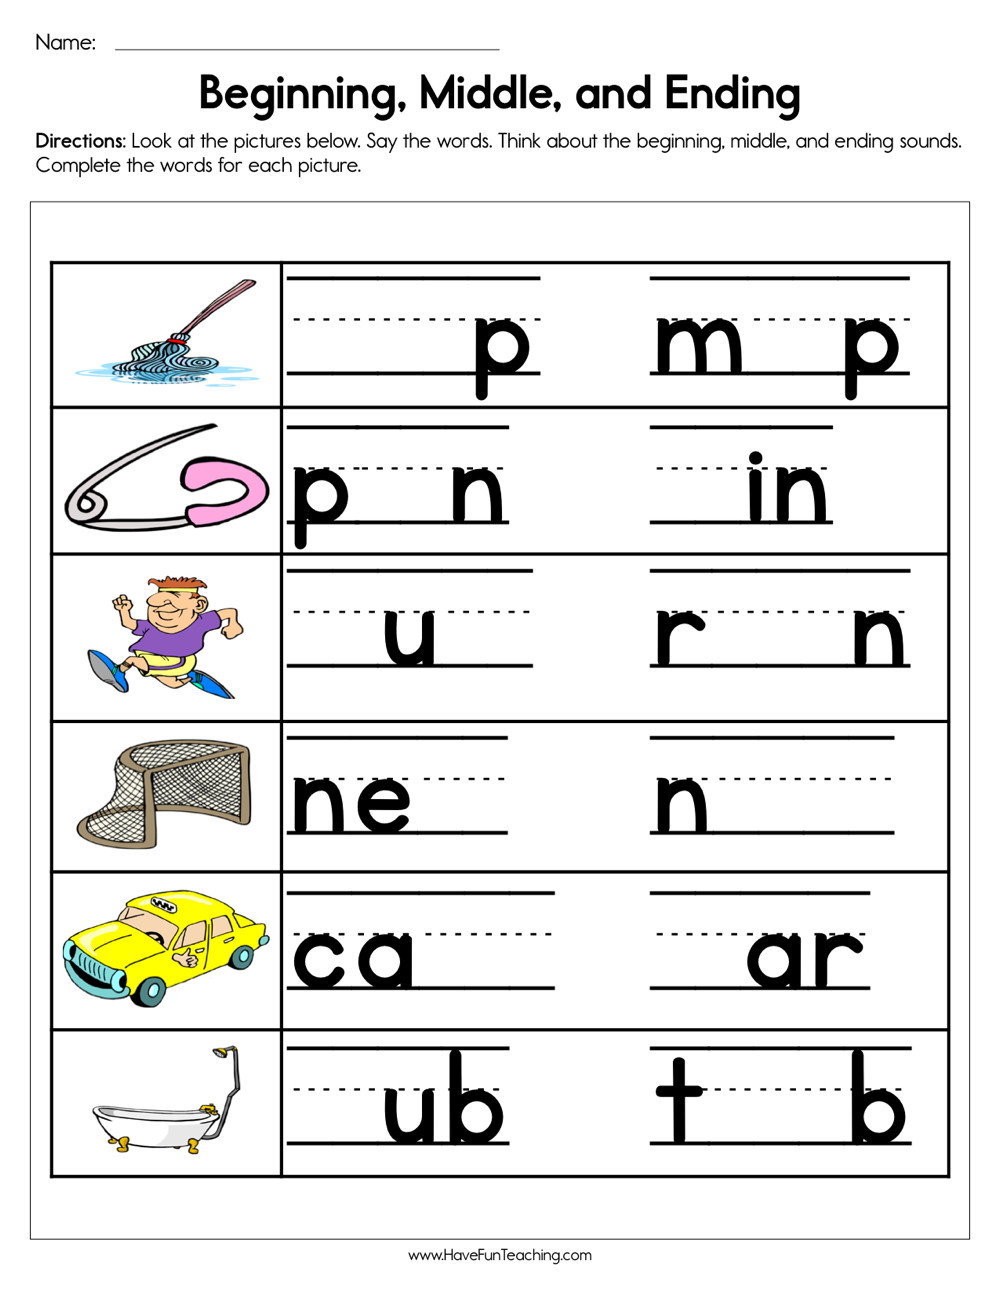 Middle sounds Worksheets for Kindergarten Beginning Middle and Ending sounds Worksheet